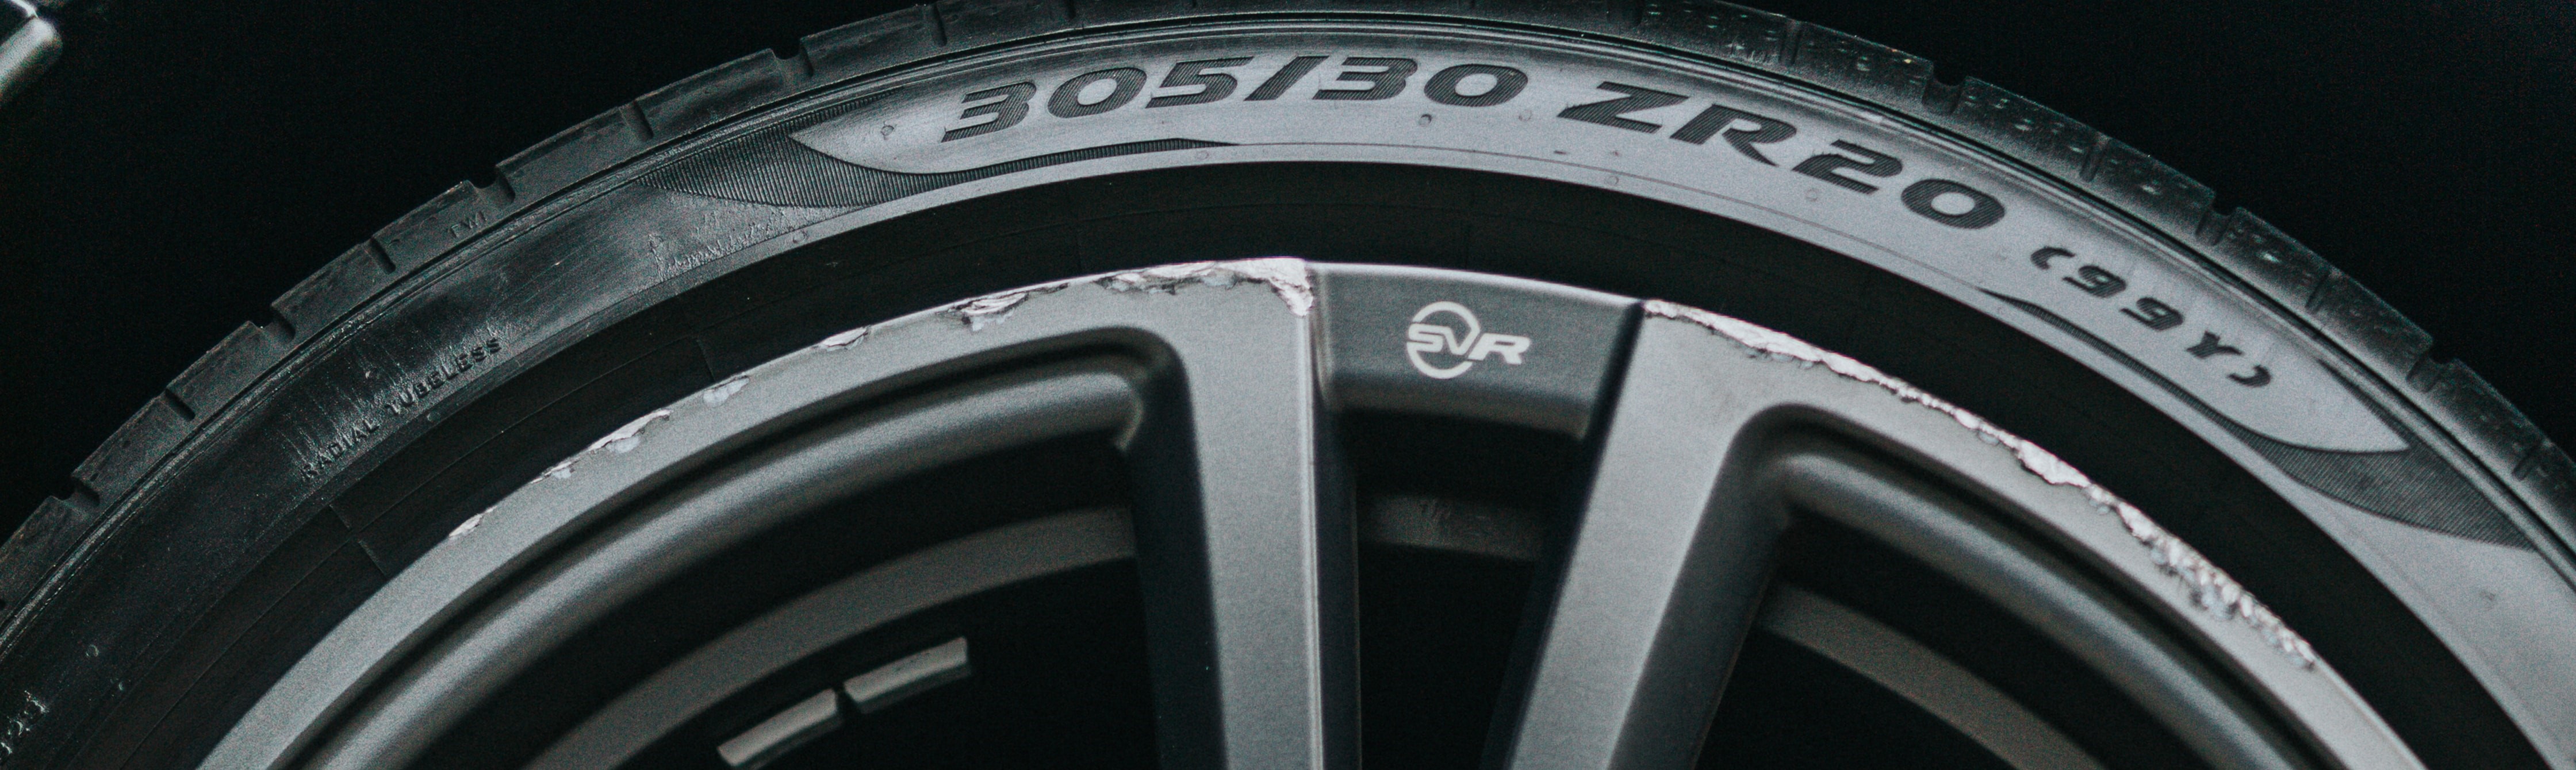 Der Lastindex, Geschwindigkeitsindex und die Reifengre auf einem Jaguar Reifen